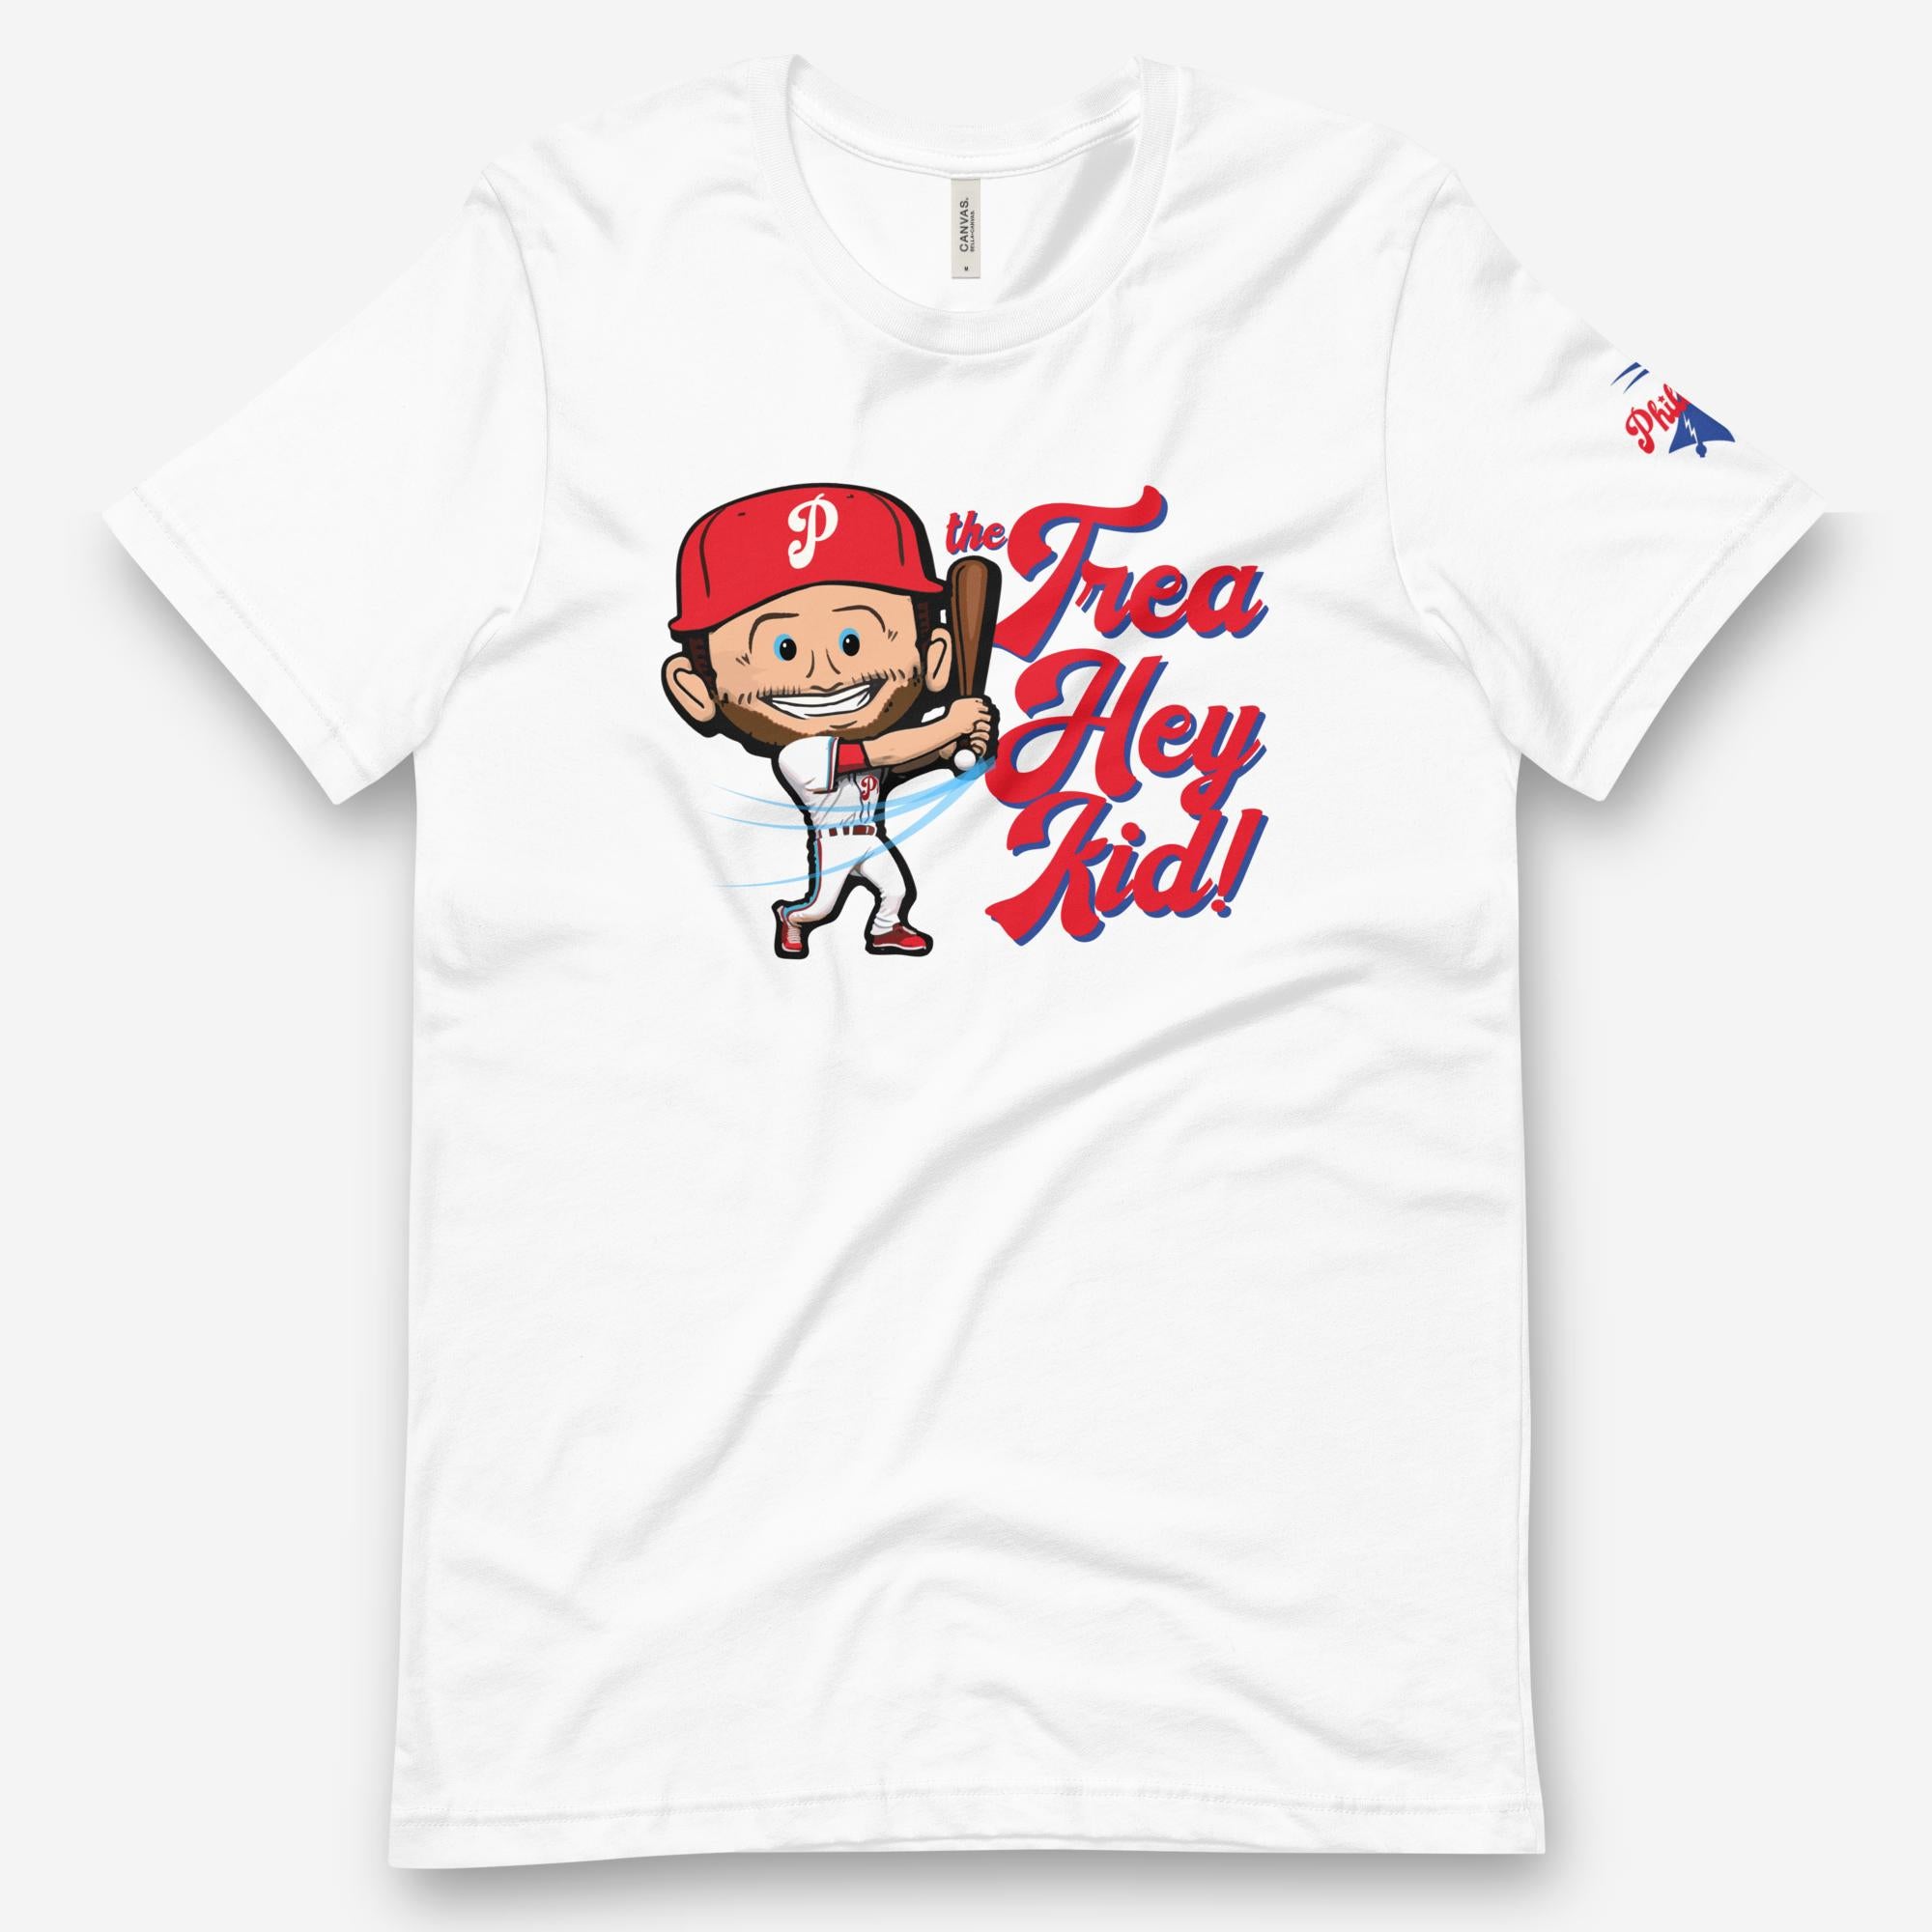 Philadelphia Phillies The Trea Hey Kid Shirt - Peanutstee